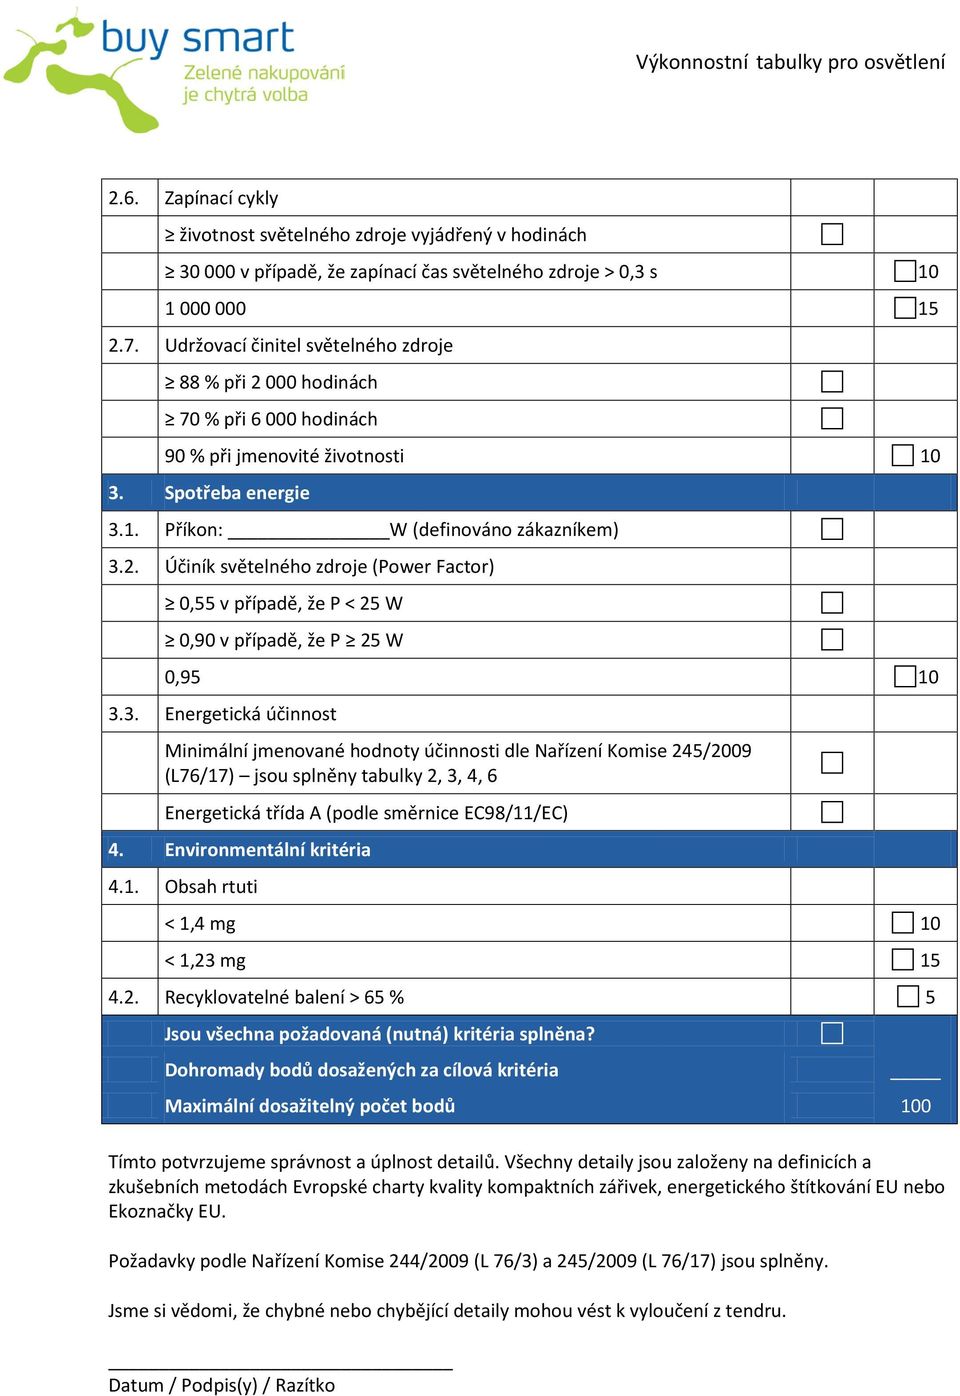 3. Energetická účinnost Minimální jmenované hodnoty účinnosti dle Nařízení Komise 245/2009 (L76/17) jsou splněny tabulky 2, 3, 4, 6 Energetická třída A (podle směrnice EC98/11/EC) 4.